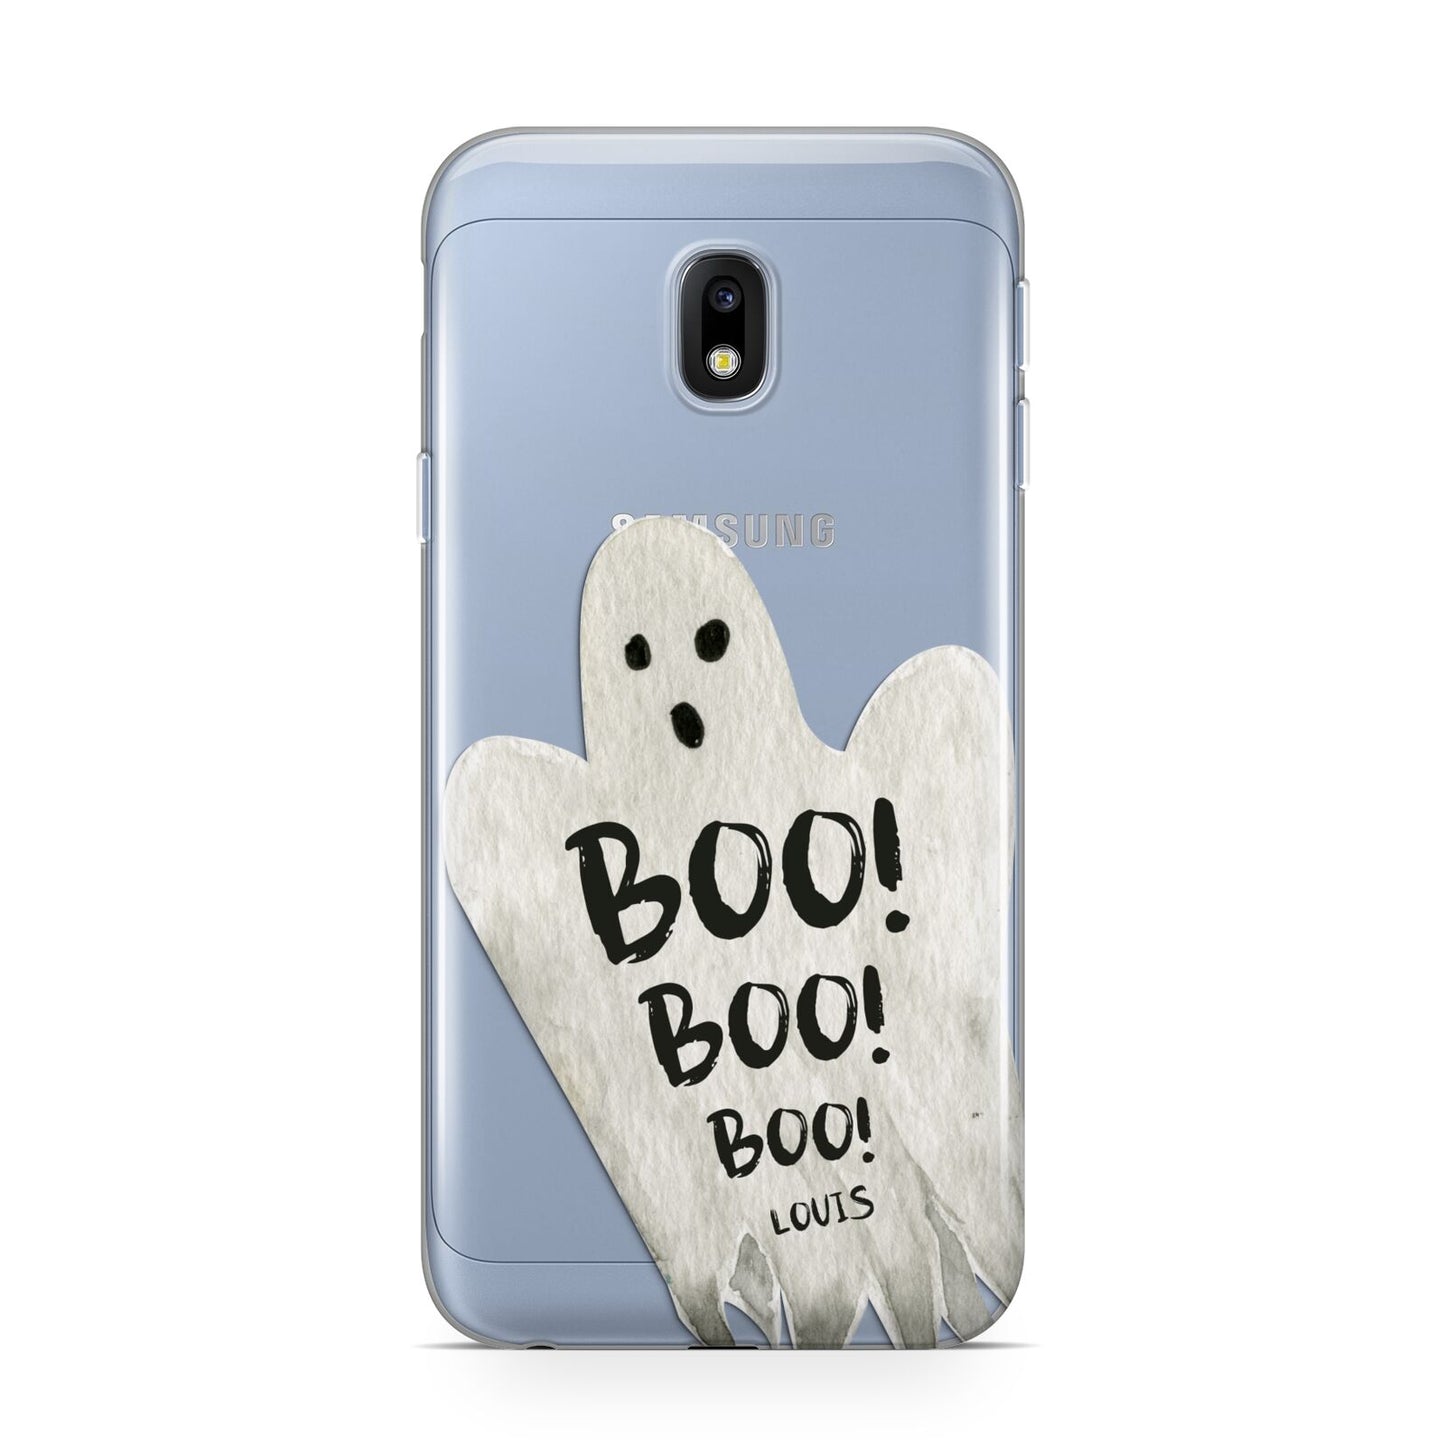 Boo Ghost Custom Samsung Galaxy J3 2017 Case